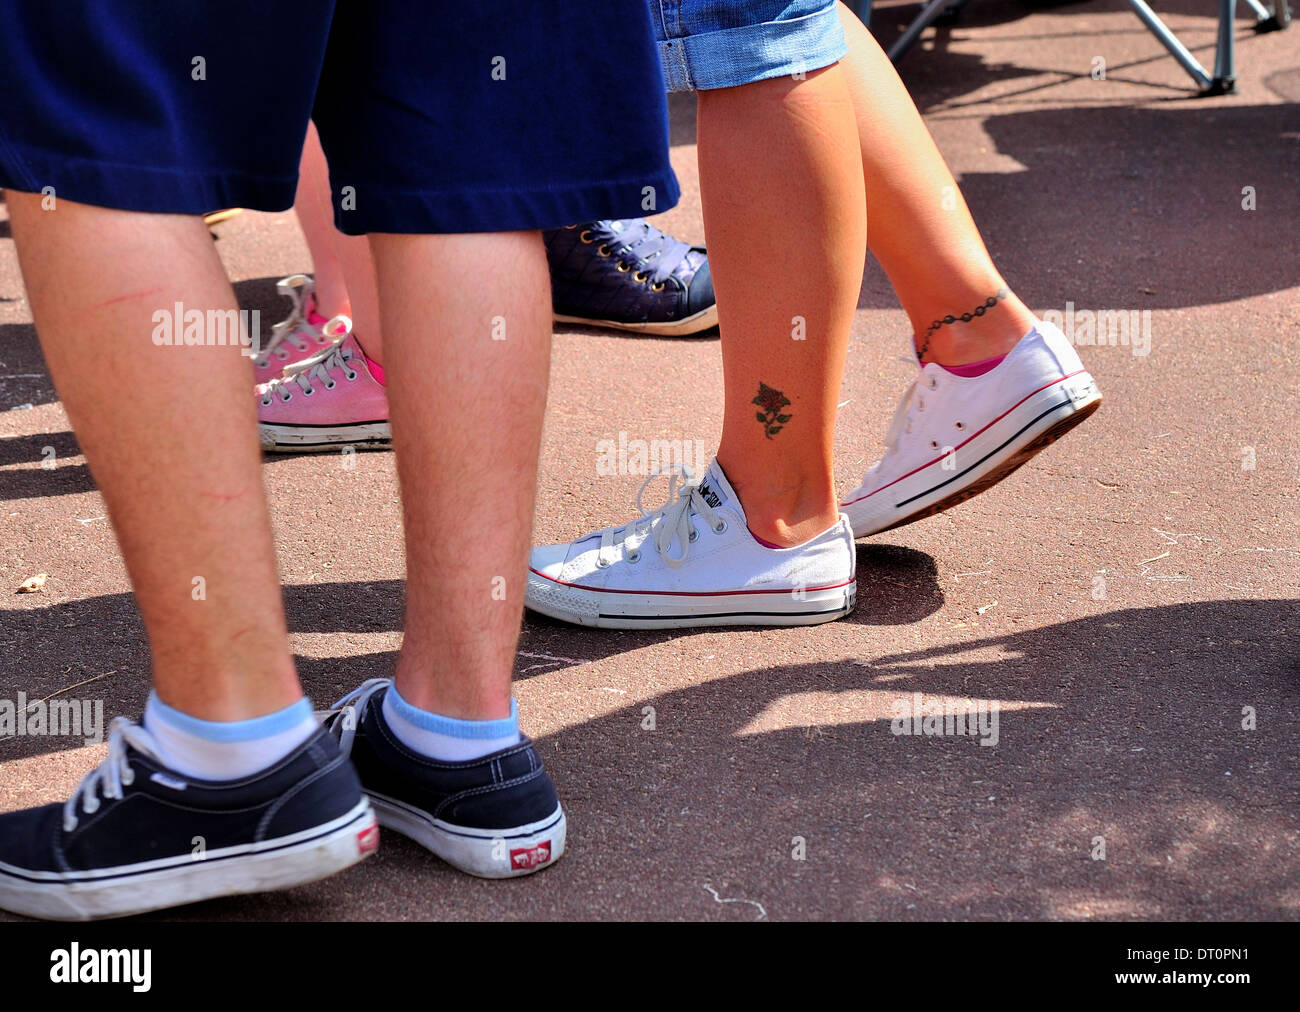 Beine zu Fuß auf der Promenade in Sommershorts und Trainer mit Kette und rose Knöchel Tattoos. Clacton Essex UK Stockfoto